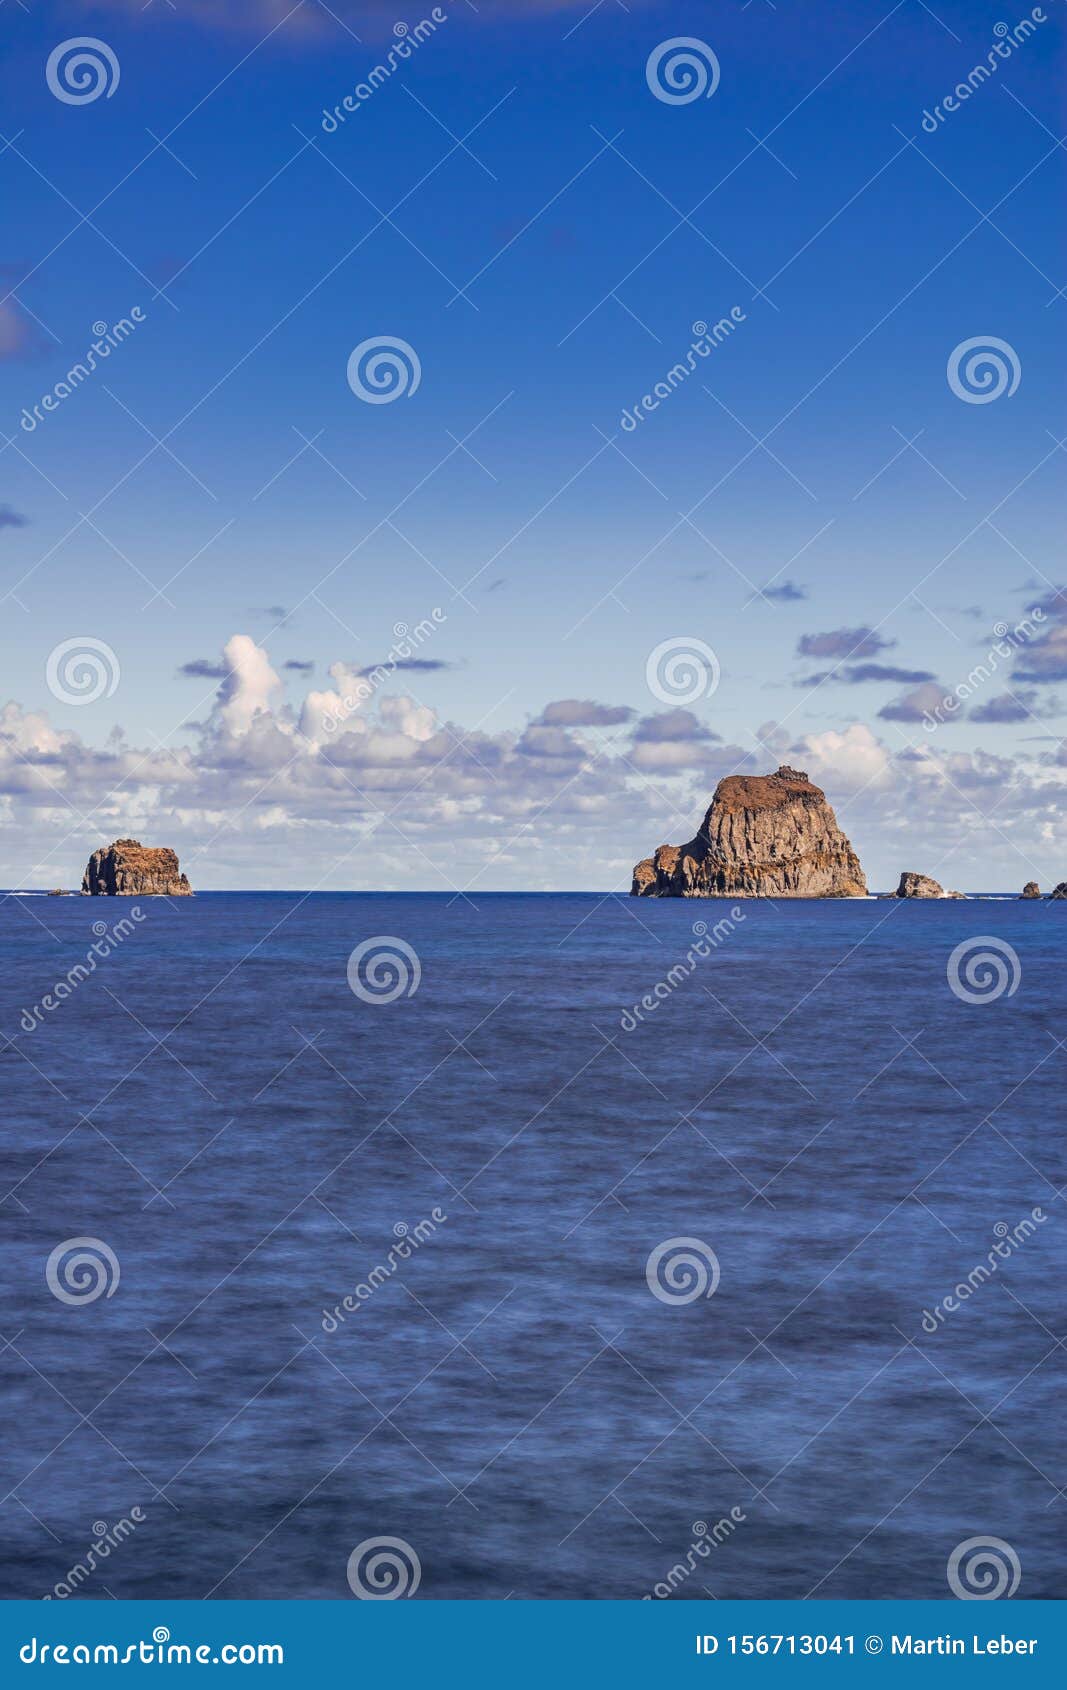 roques de salmor, volcanic rocks and cliff in atlantic ocean